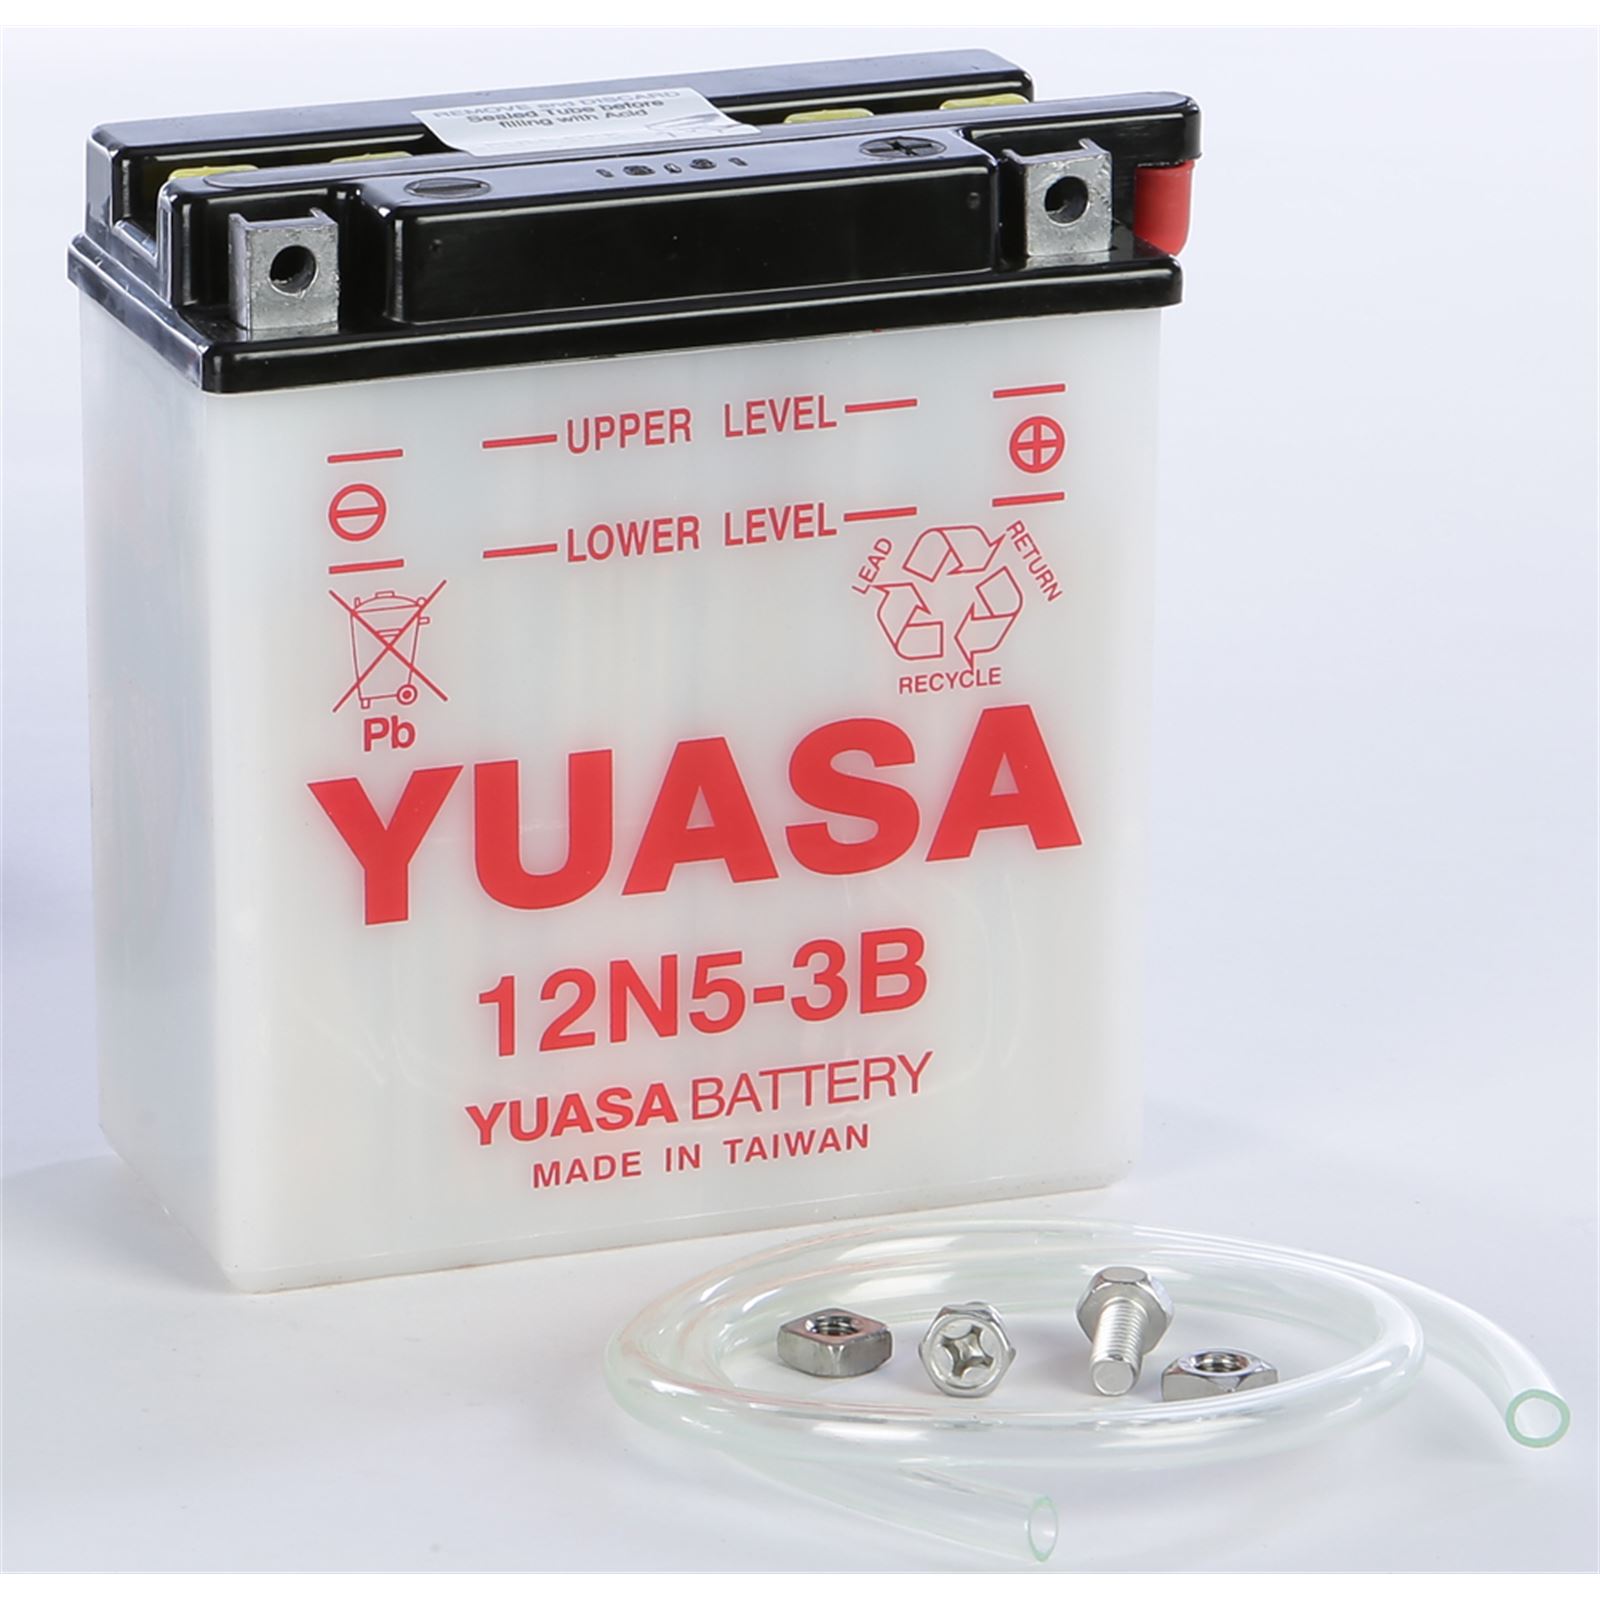 Yuasa Conventional 6V Battery 6N4B-2A-3 YUAM26B43